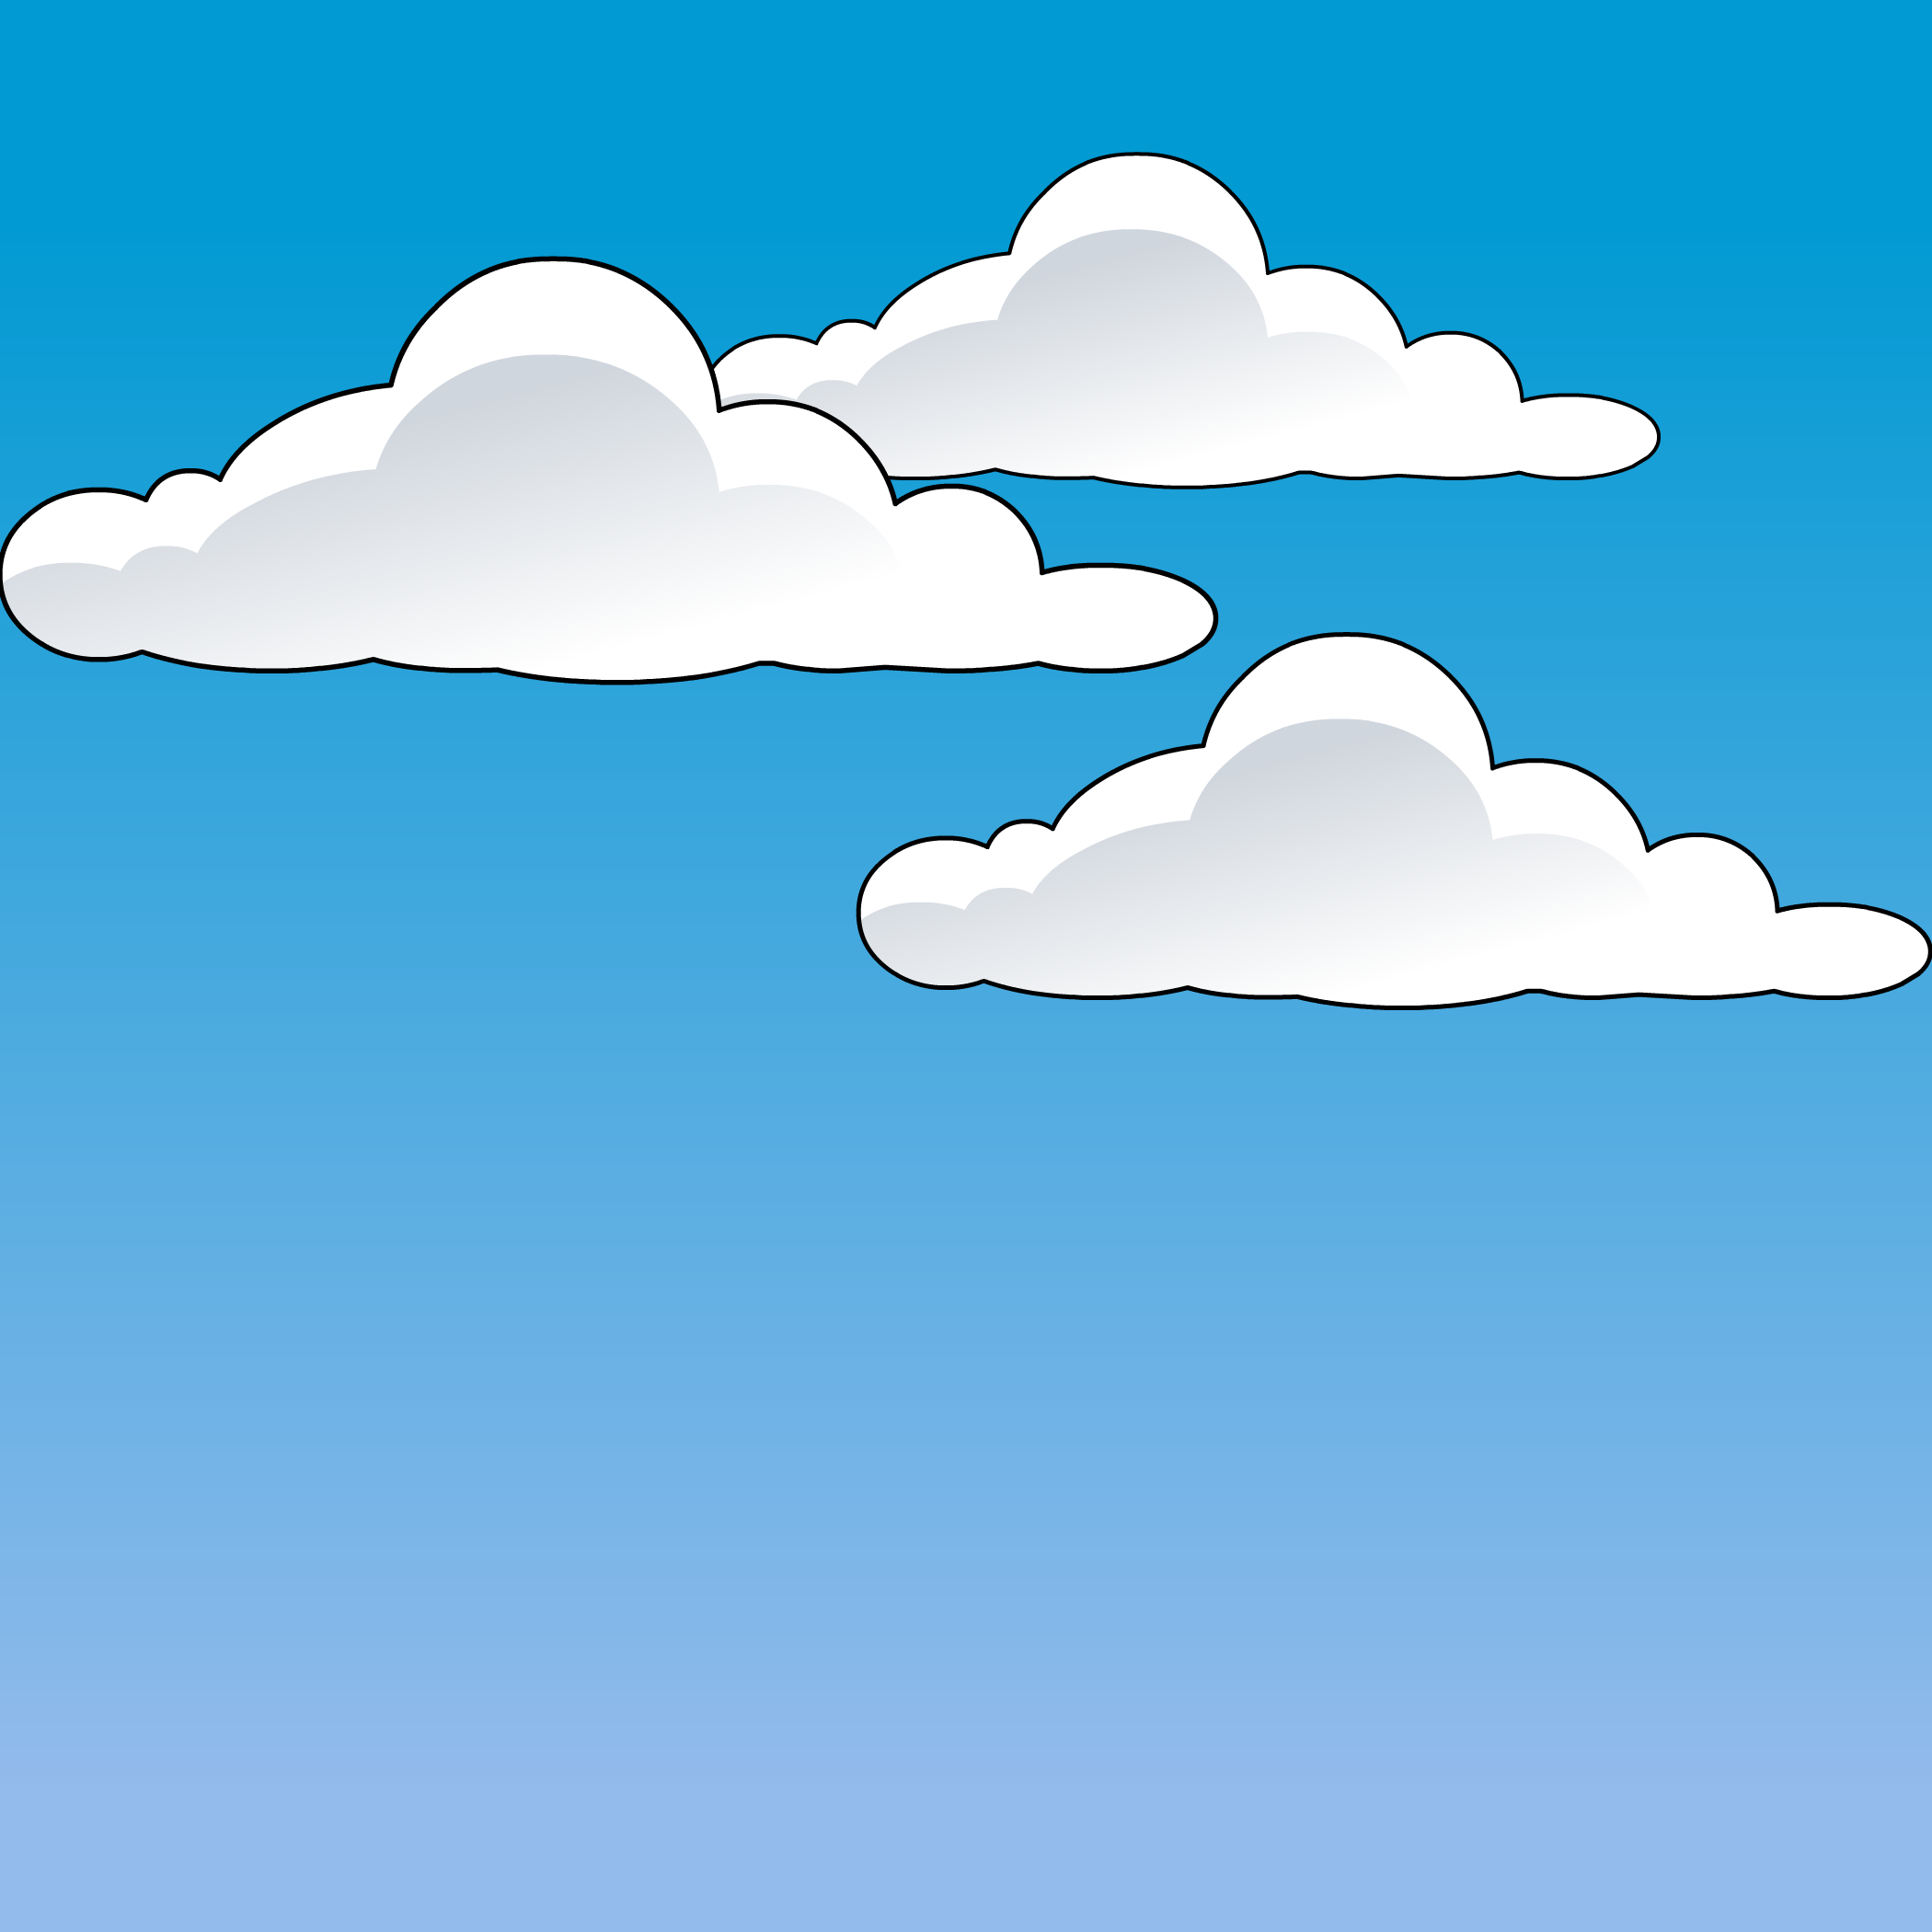 Clouds Background | Club Penguin Rewritten Wiki | Fandom